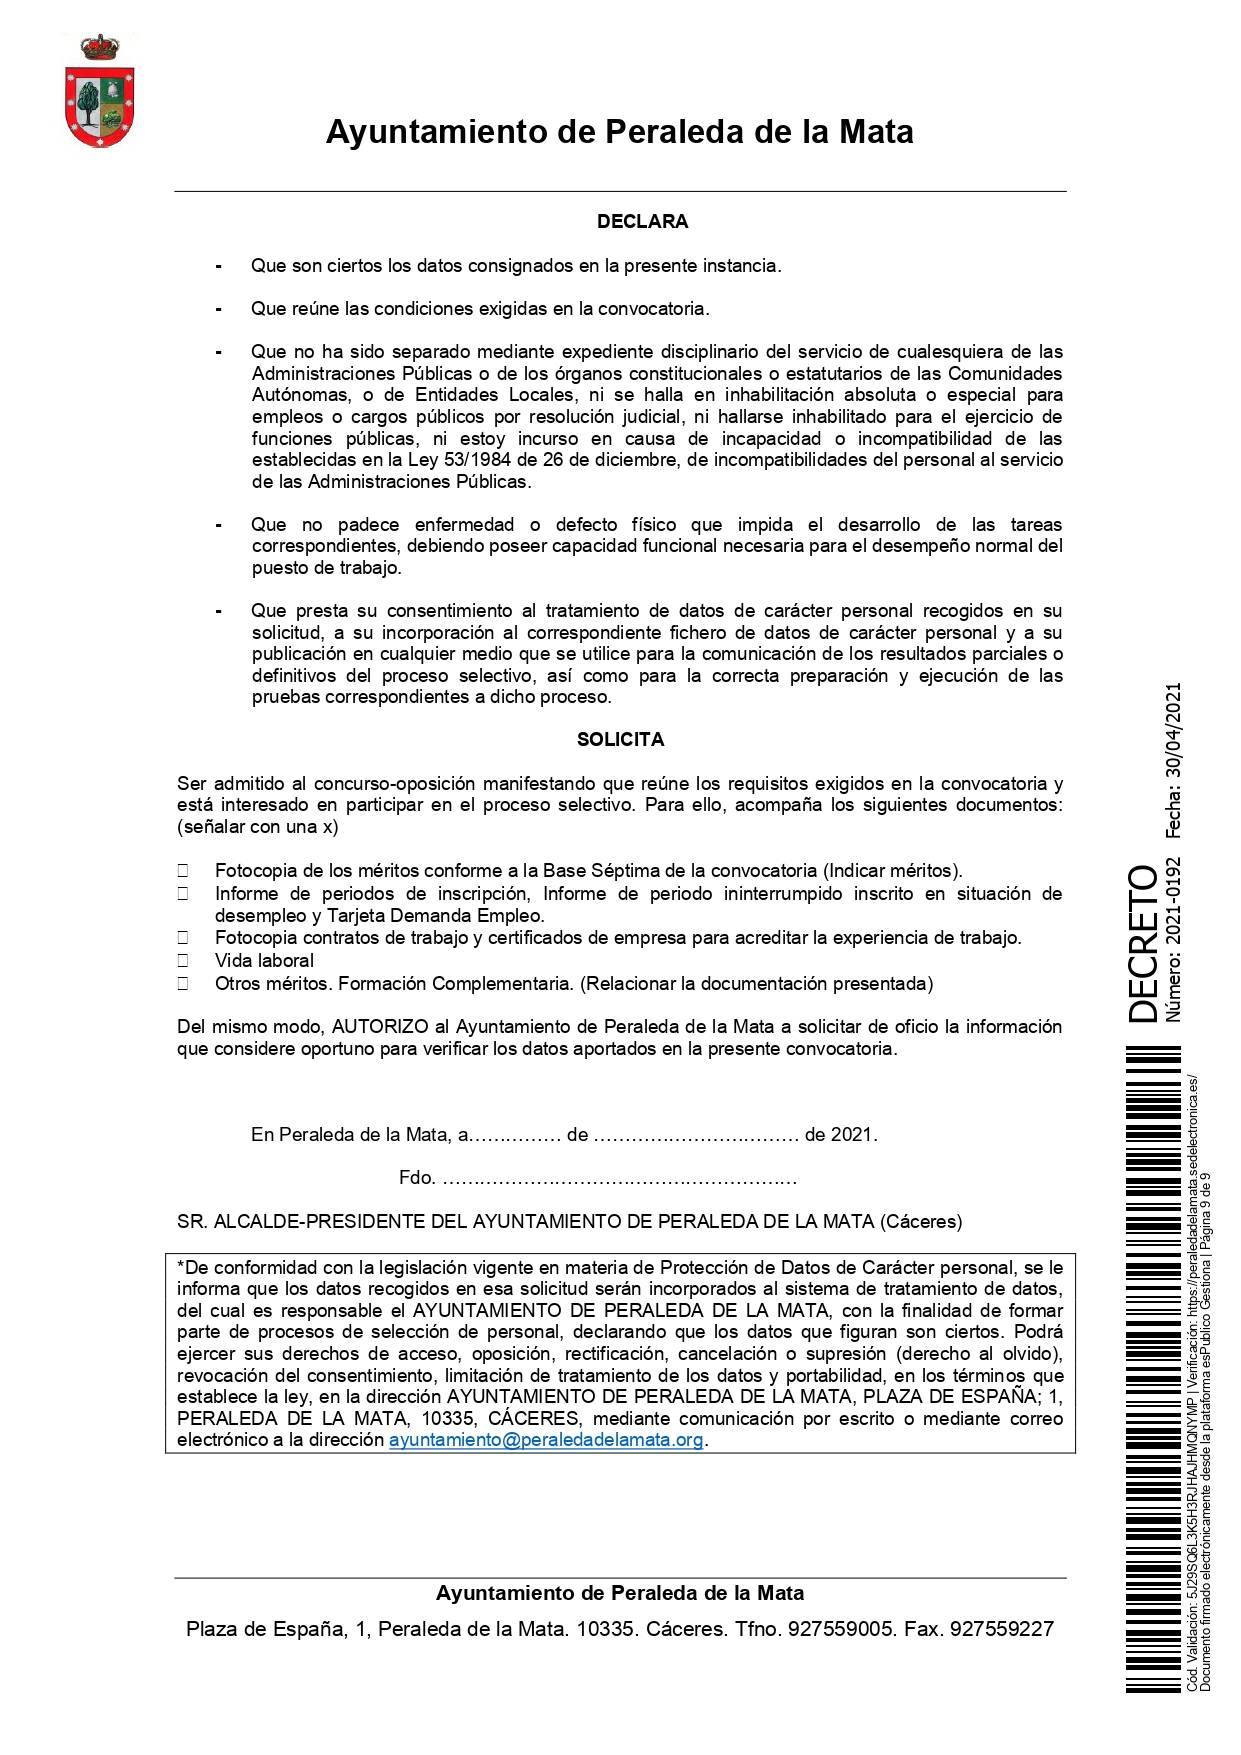 2 socorristas para la piscina municipal (2021) - Peraleda de la Mata (Cáceres) 9